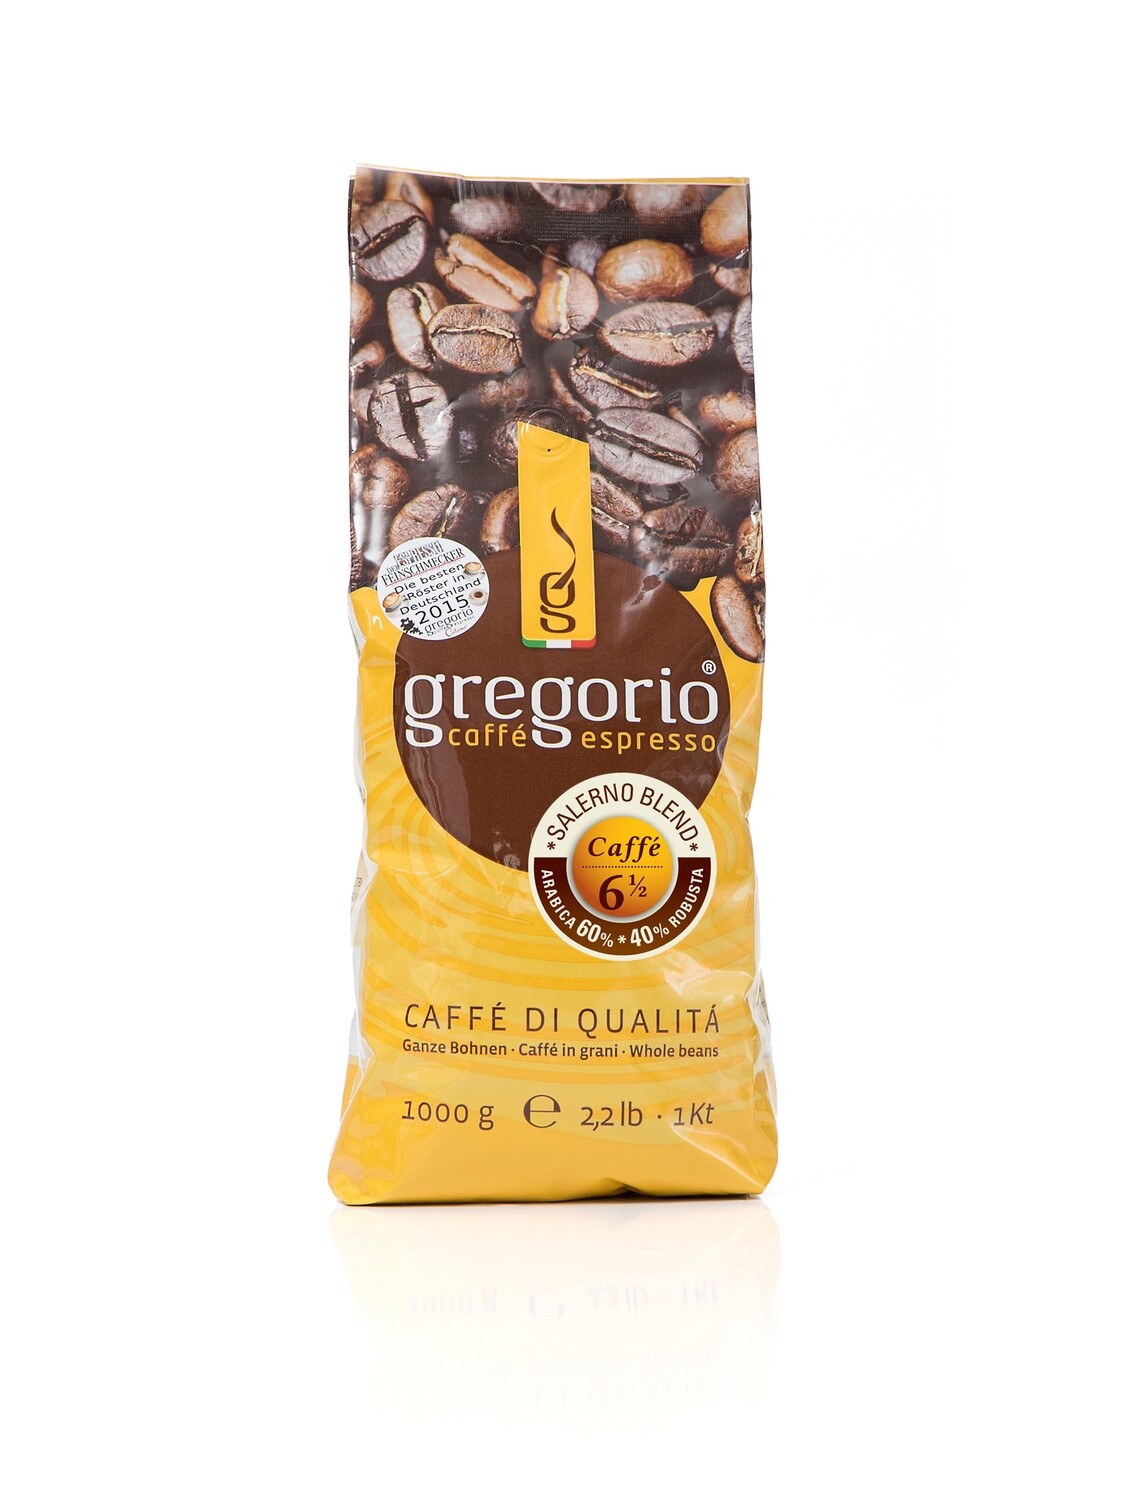 Caffé Espresso gregorio 6 ½  Bohnen 1 Kg °°°°Salerno °°°